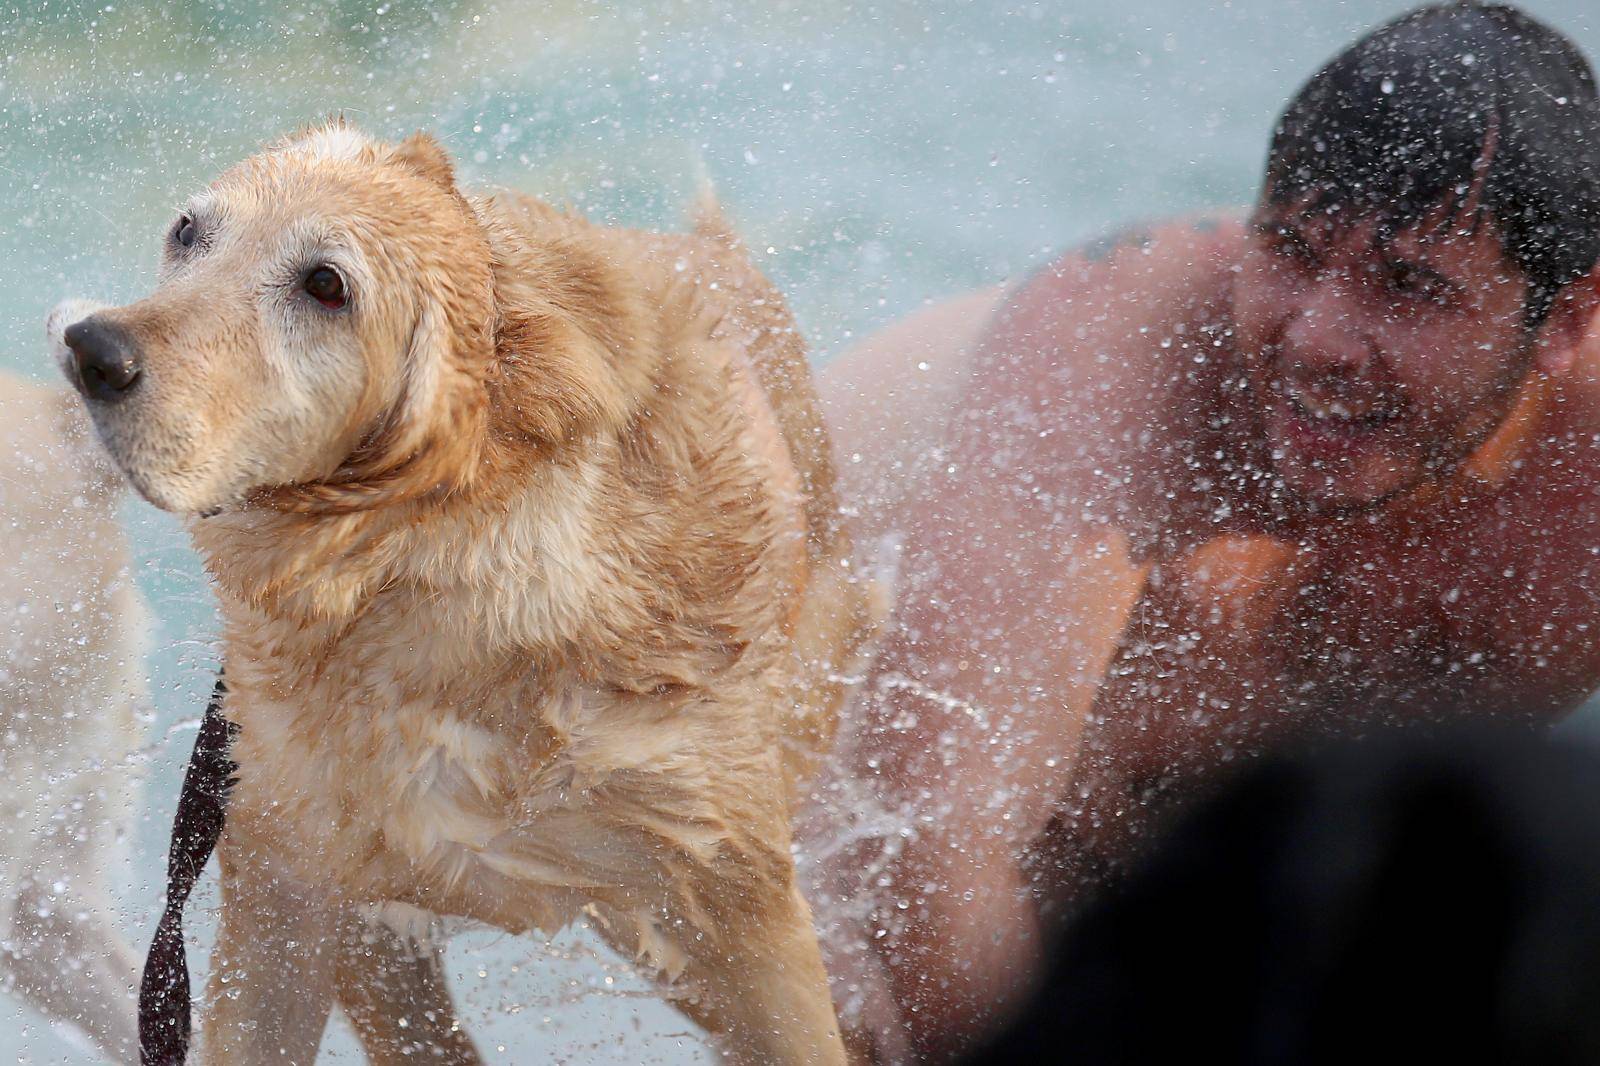 U crikvenici je održano plivačko natjecanje pasa i njihovih vlasnika